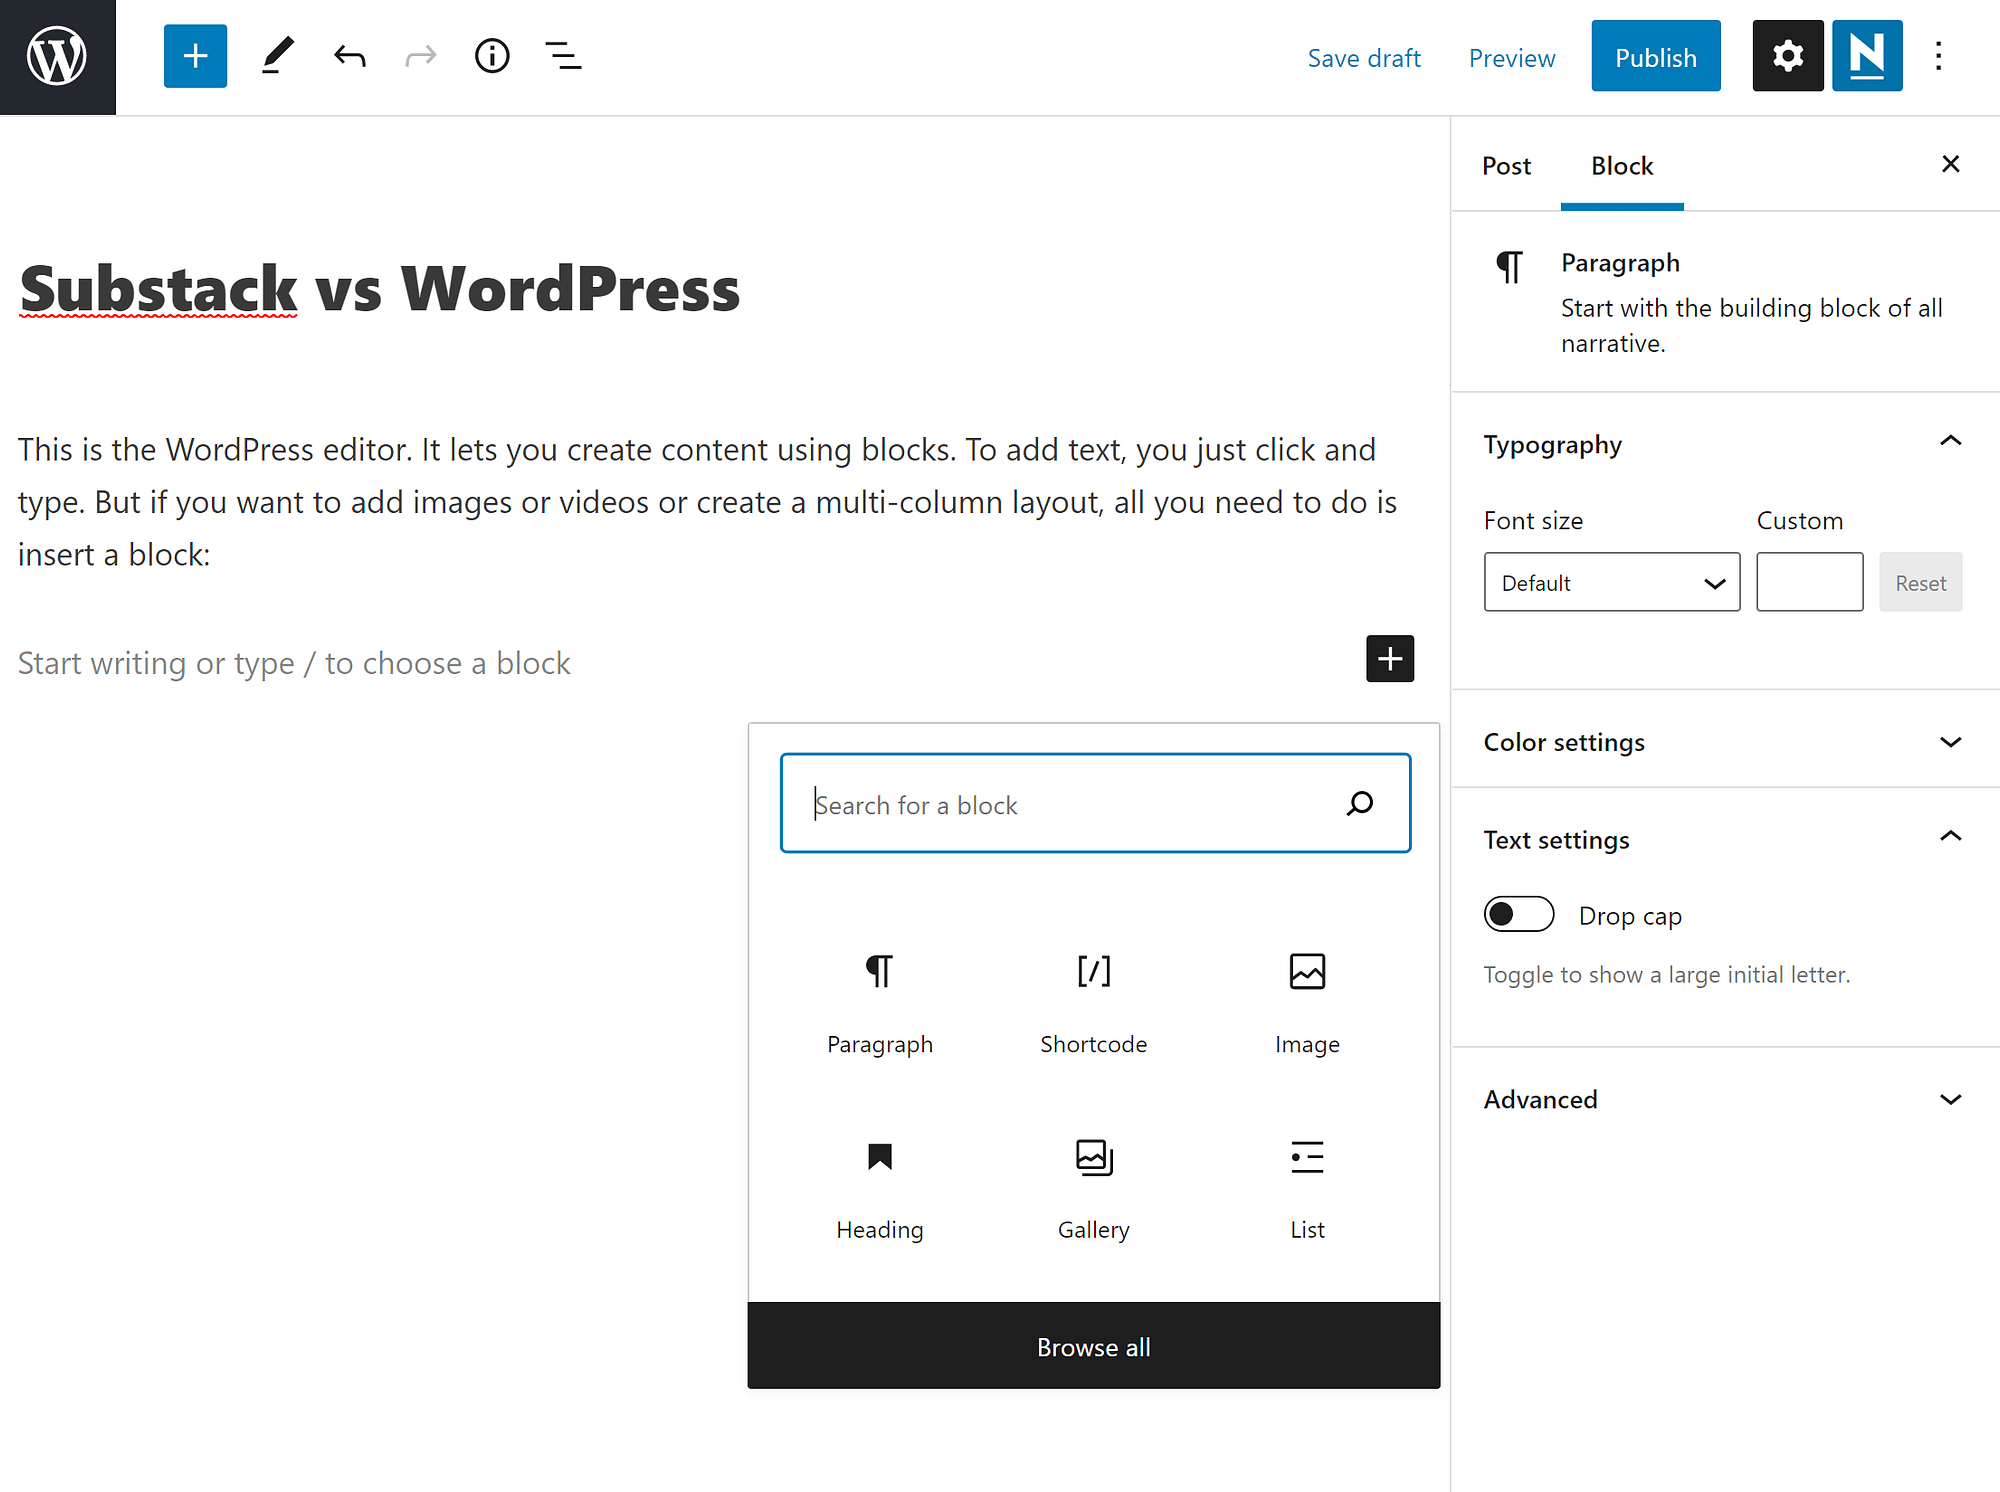 The WordPress editor